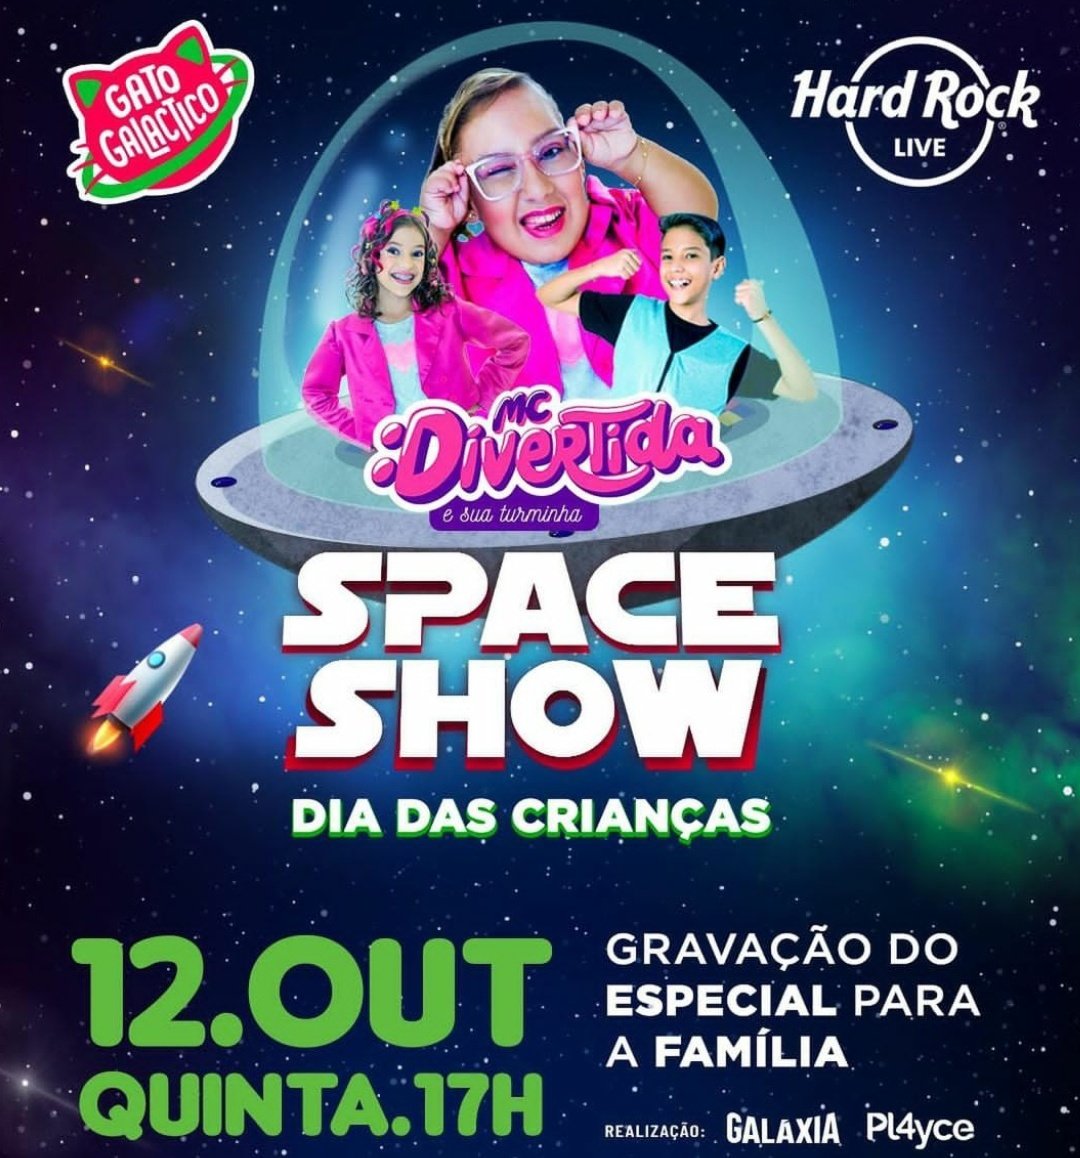 MC Divertida e sua turminha se apresentam pela primeira vez em Fortaleza -  Portal Etcetera